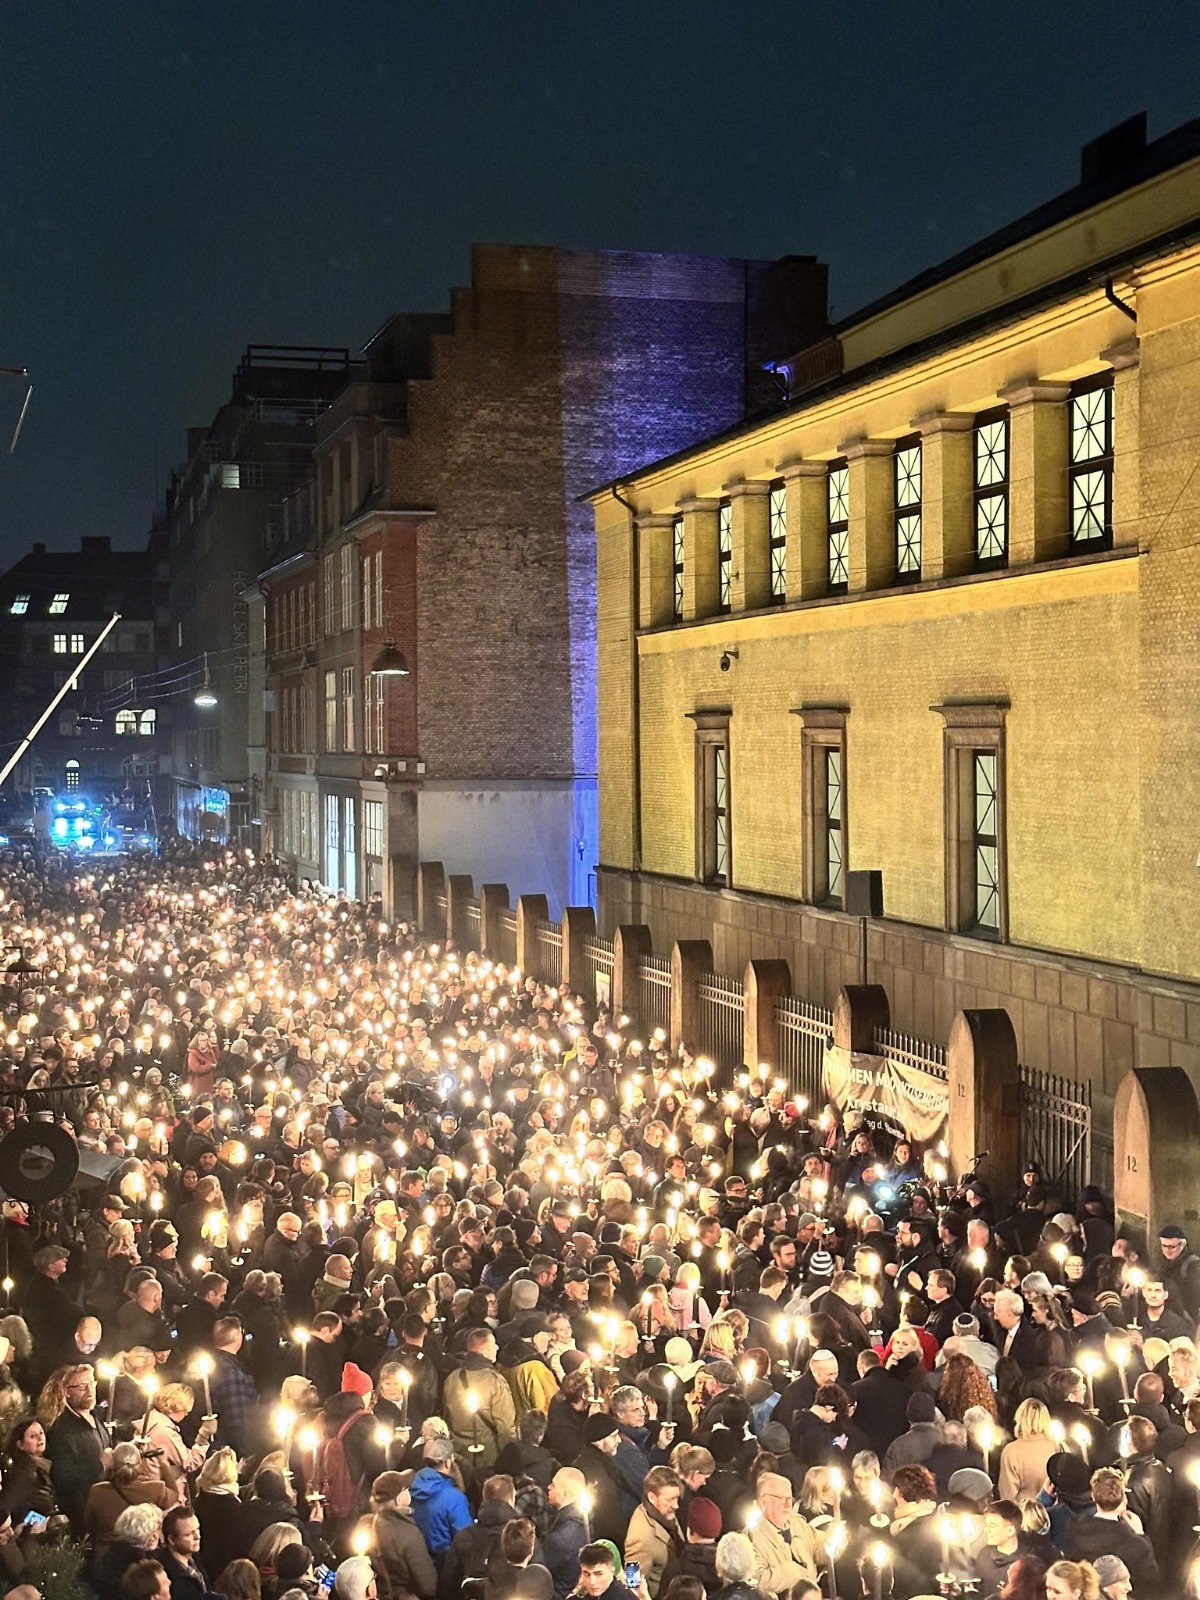 צעדה נגד אנטישמיות בנדמרק, שהובילו מבית הכנסת לבניין הפרלמנט (מתוך אלבום פרטי)